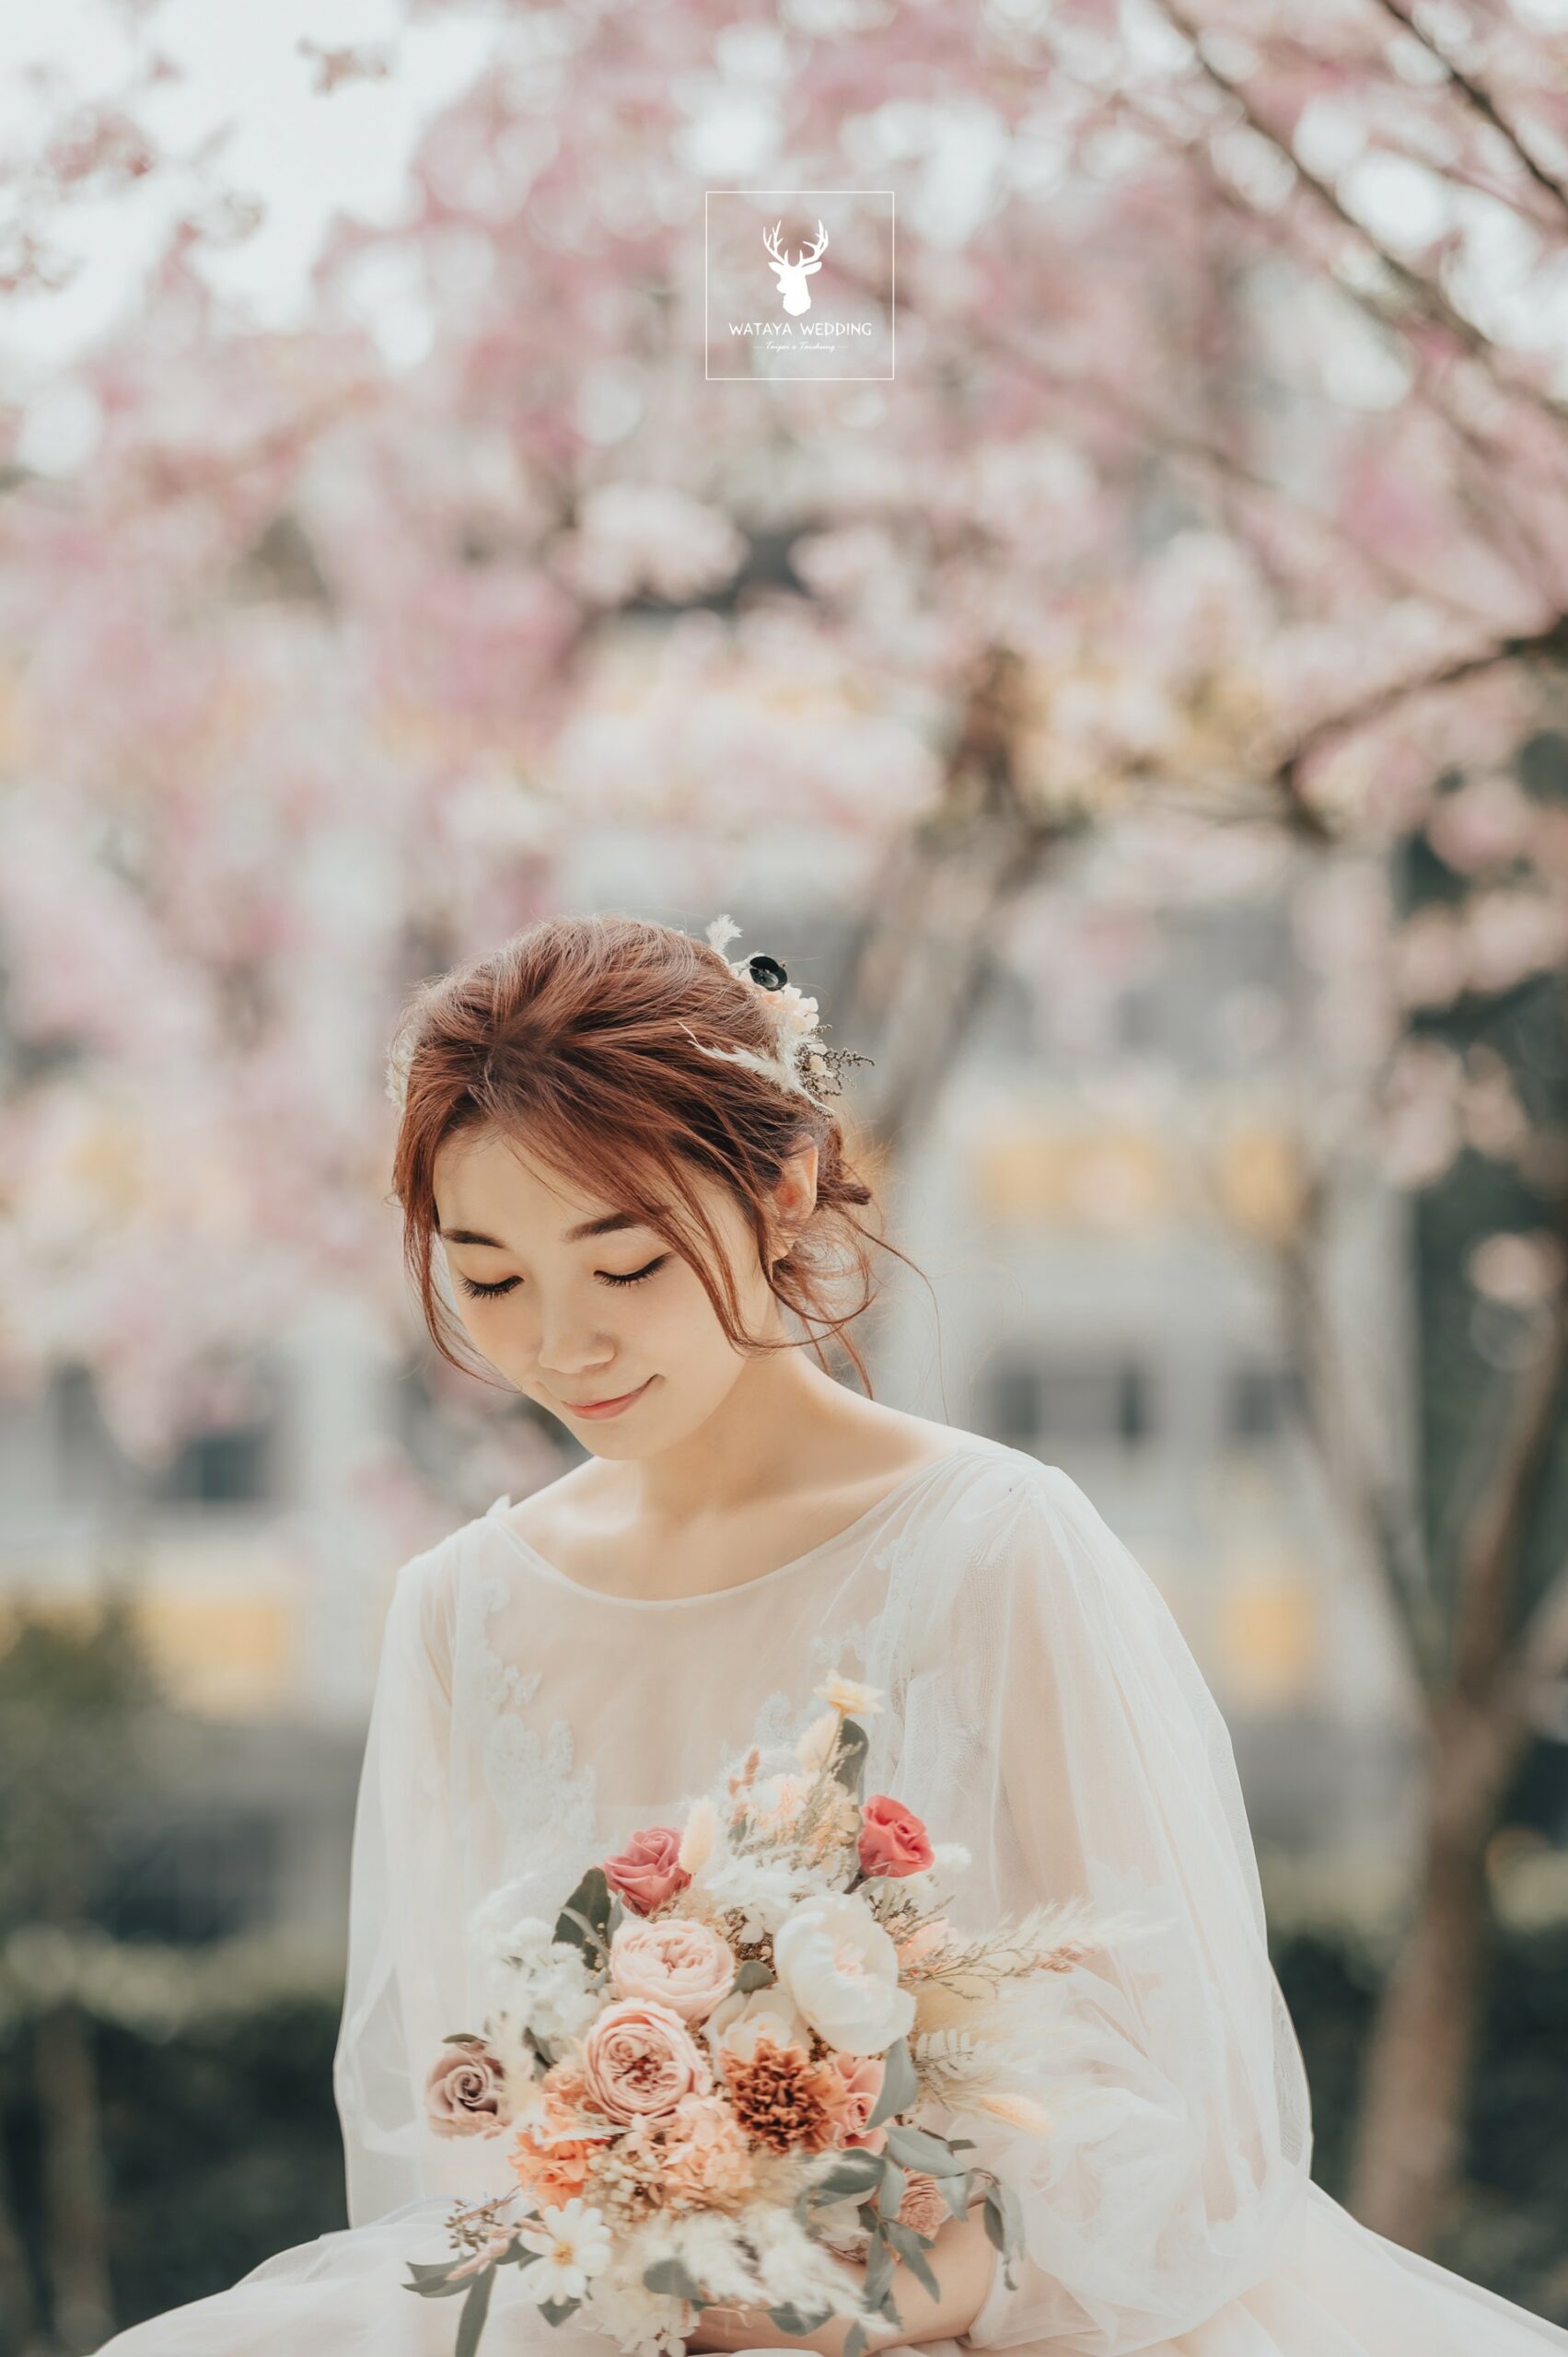 綿谷結婚式-婚紗攝影作品 (15)